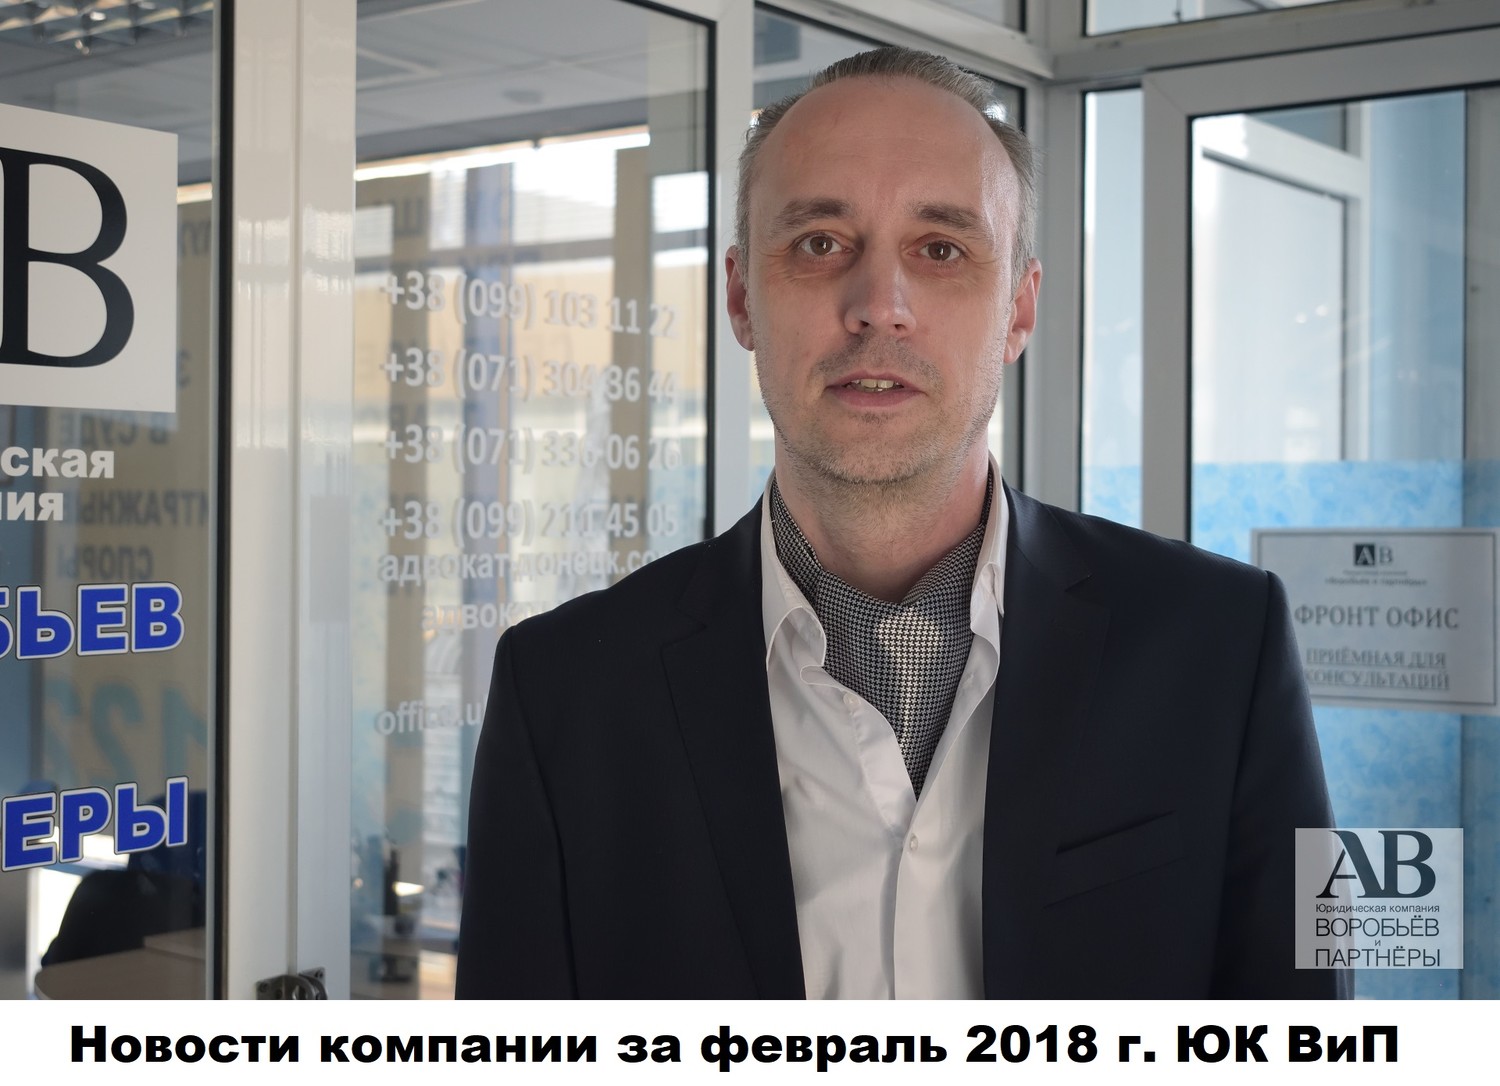 Самые главные юридические новости февраля 2018 Донецк ДНР